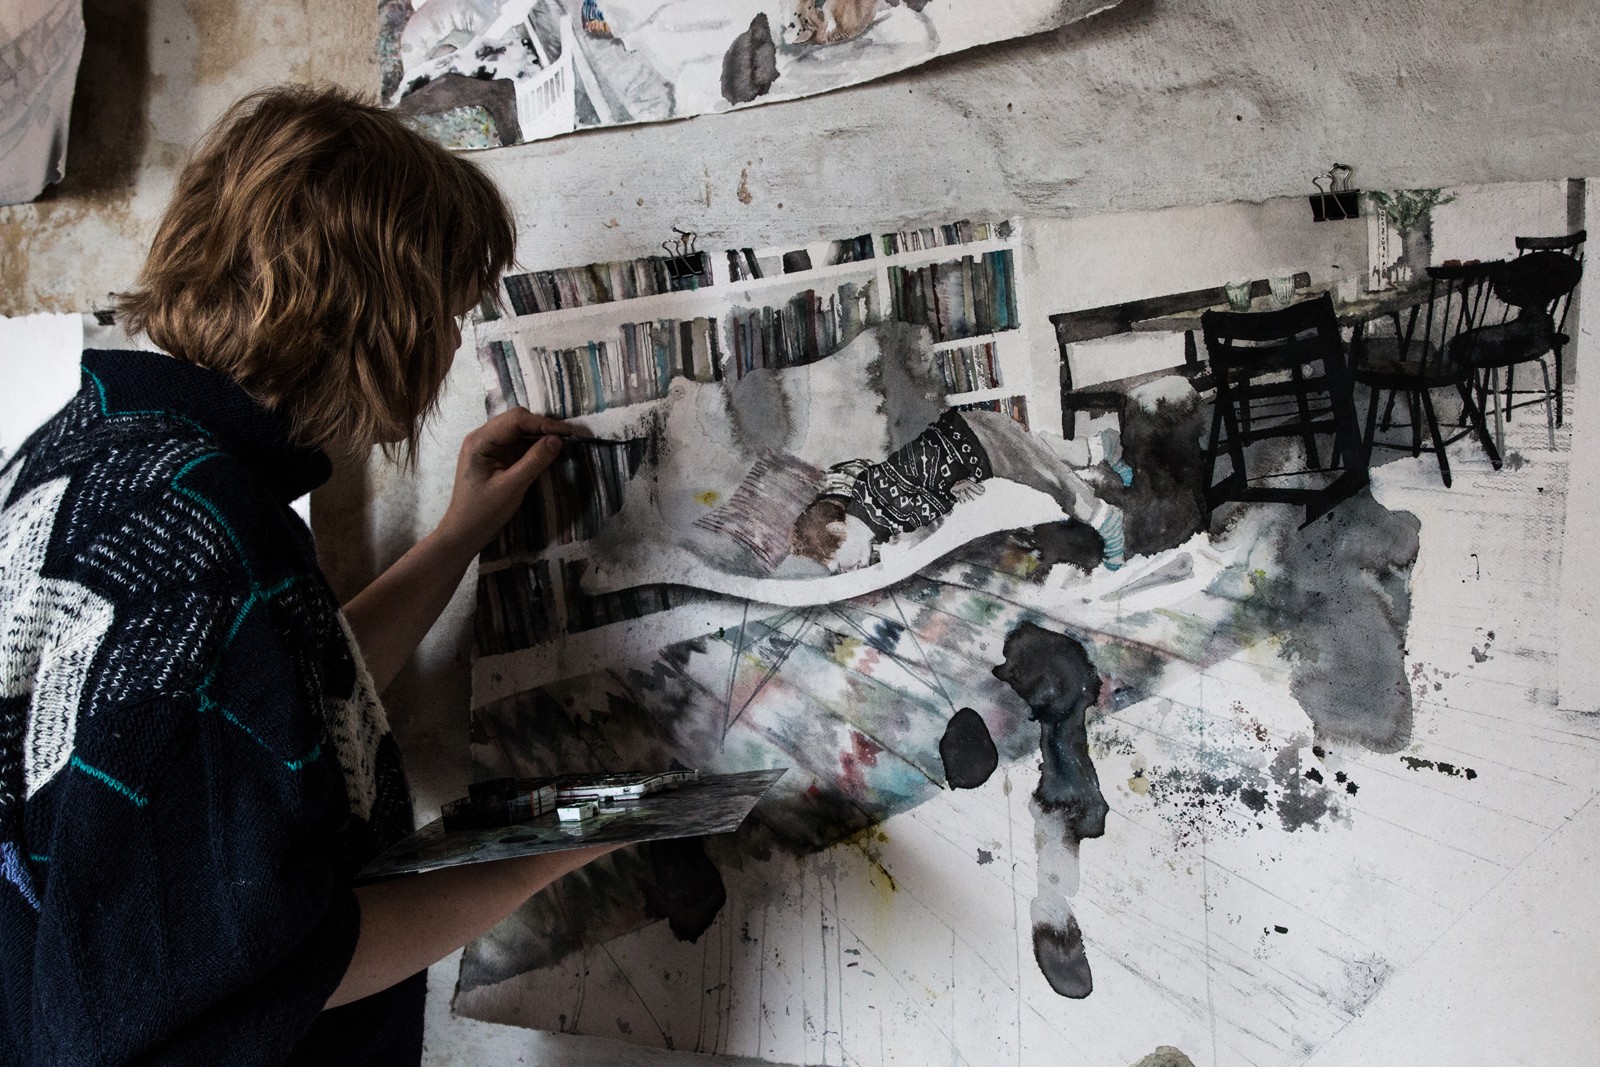 På besøg i billedkunstner Luise Faurholts værksted</br>Luise Faurholt er her igang med et billede hvor motivet er hentet hjemme i hendes egen stue. </br>Foto: Mariana Gil